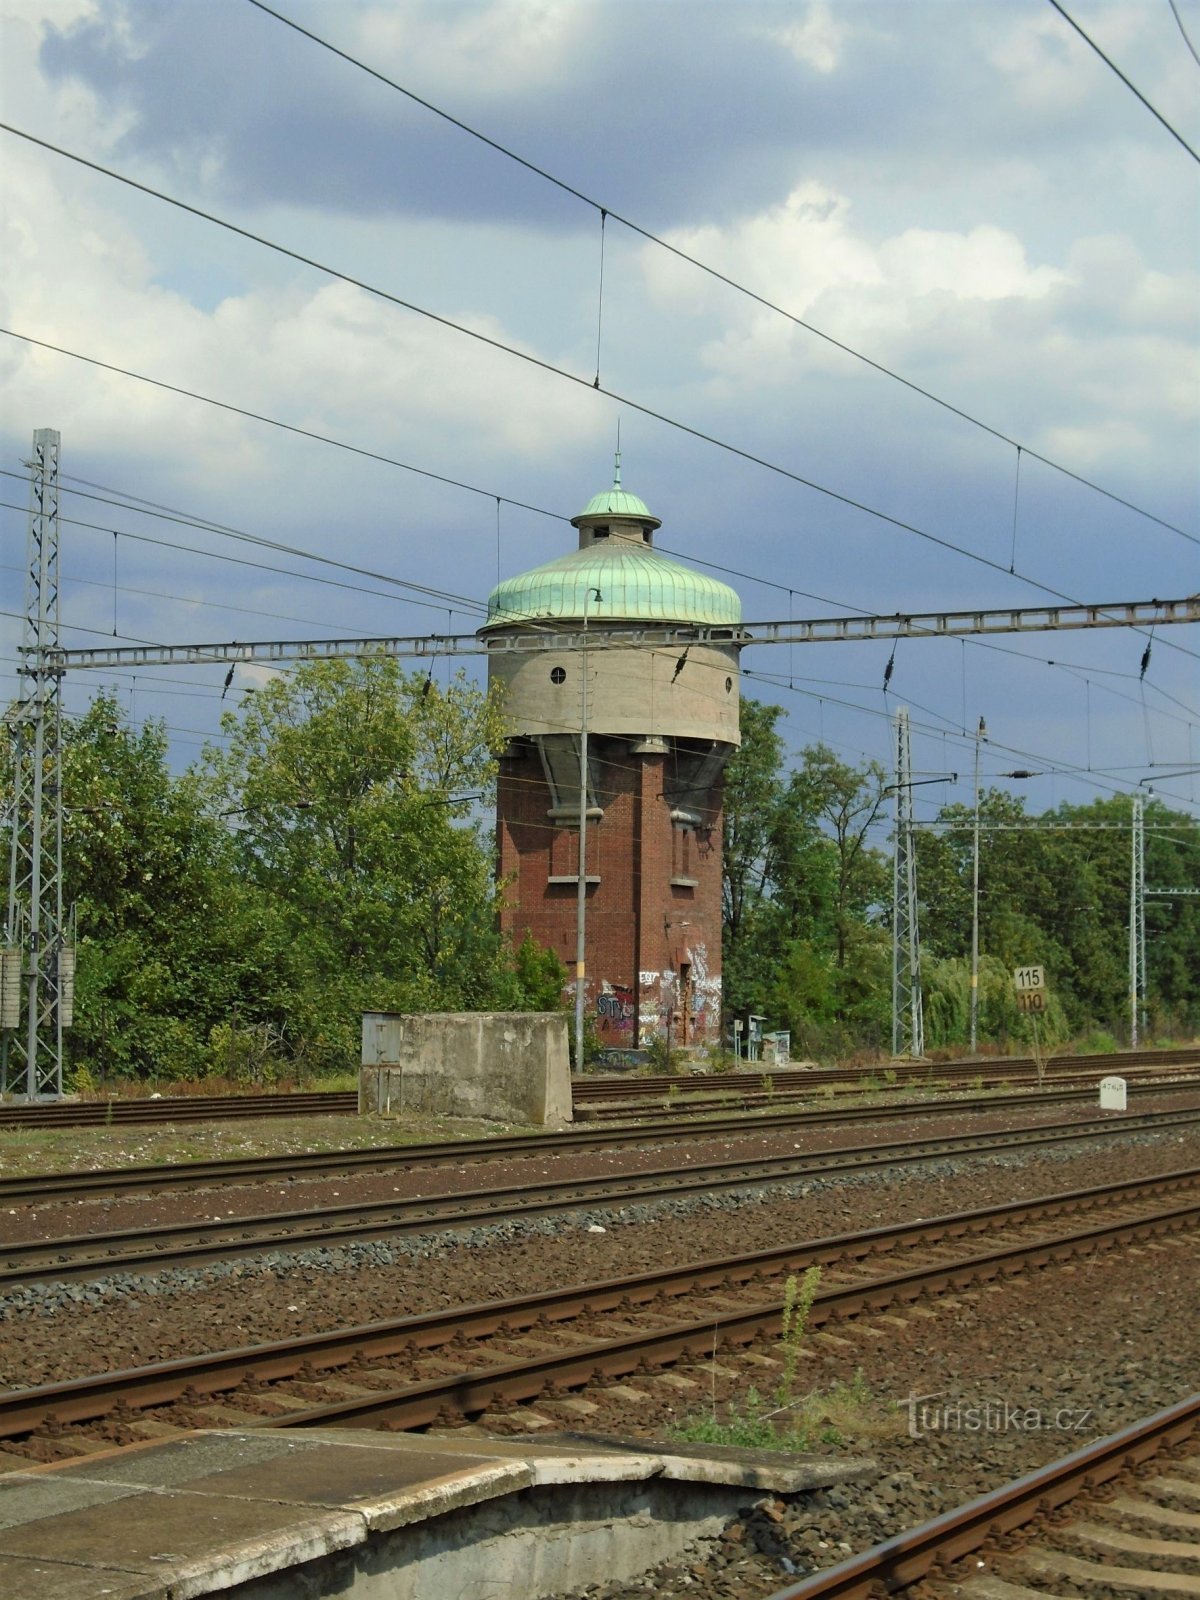 Állomás torony tározója (Roudnice nad Labem, 23.7.2018.)